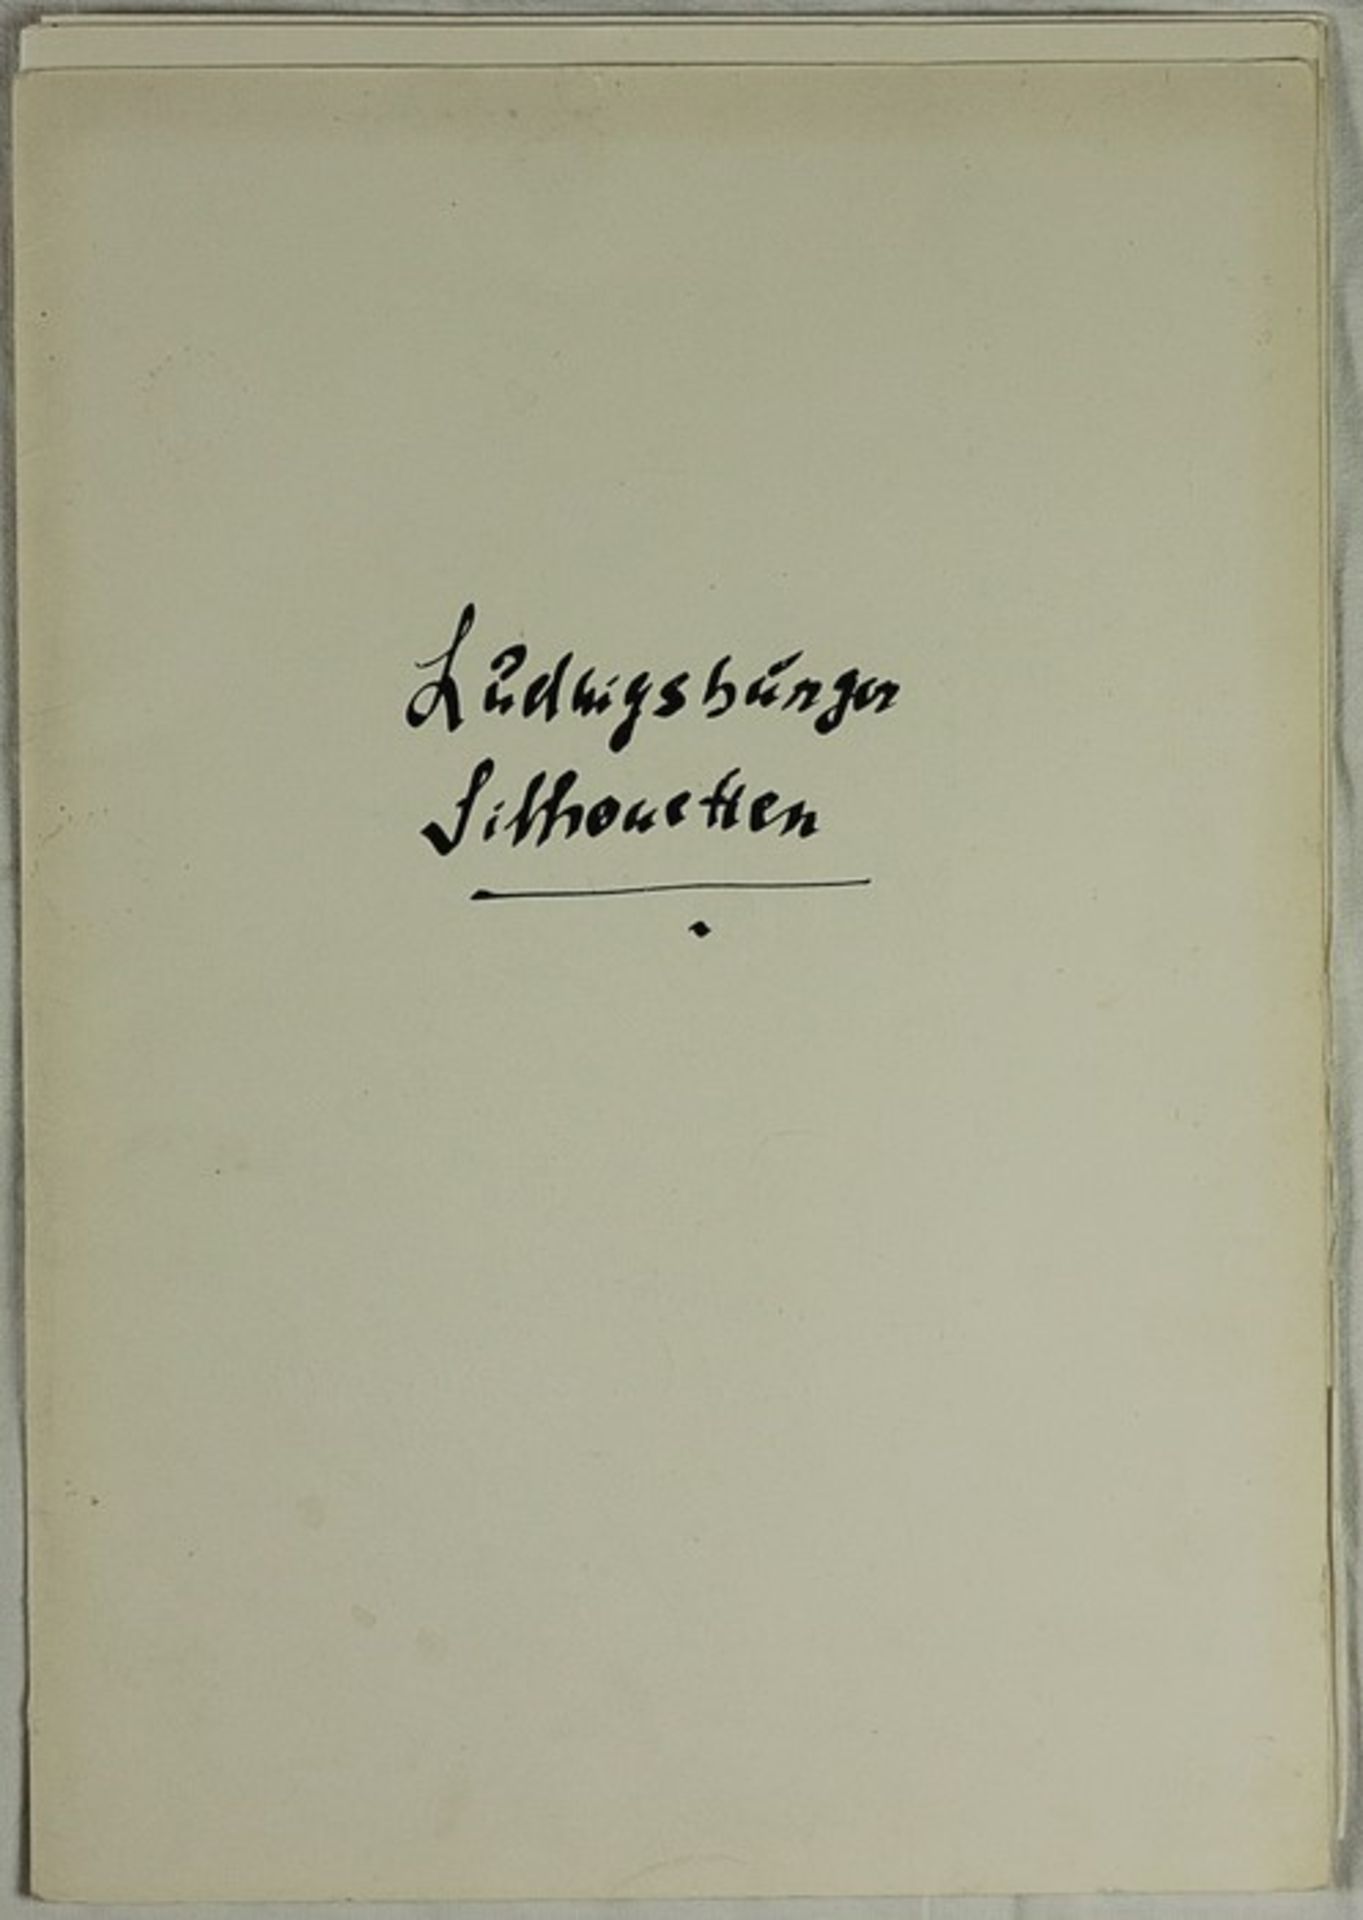 Heuschele, Otto/Sequenc, Franz"Ludwigsburger Silhouetten", Mappe anlässlich der 250. Wiederkehr